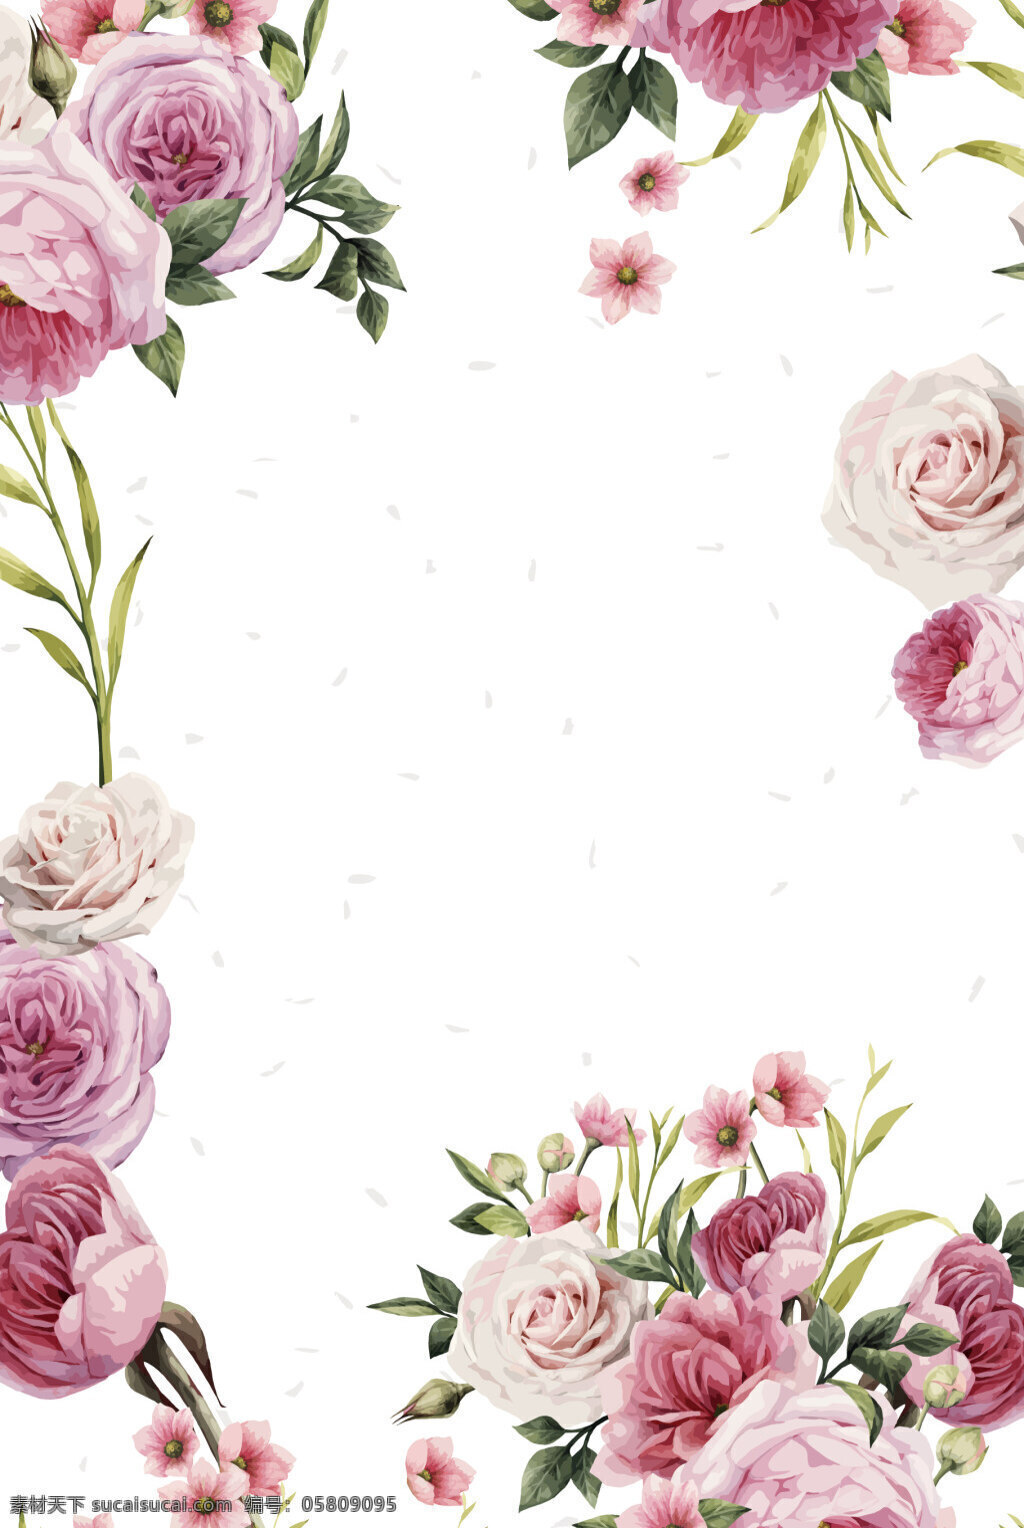 背景 粉色 海报 花边 花朵 花卉 婚礼 婚庆 浪漫 玫瑰花 梦幻 清新 矢量 水彩 手绘 矢量素材